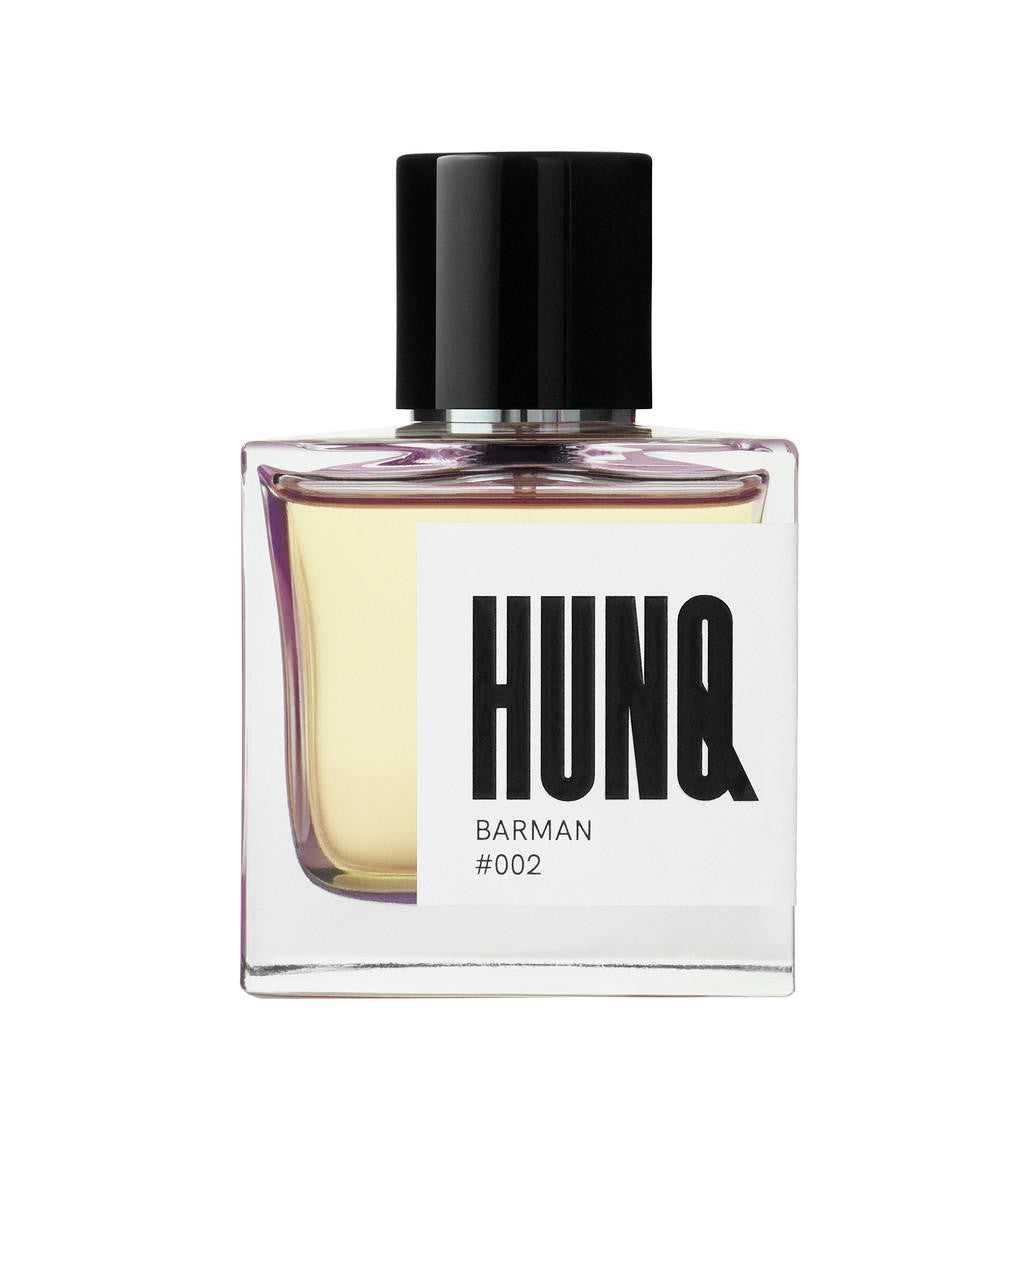  HUNQ #002 Barman Eau de Parfum 